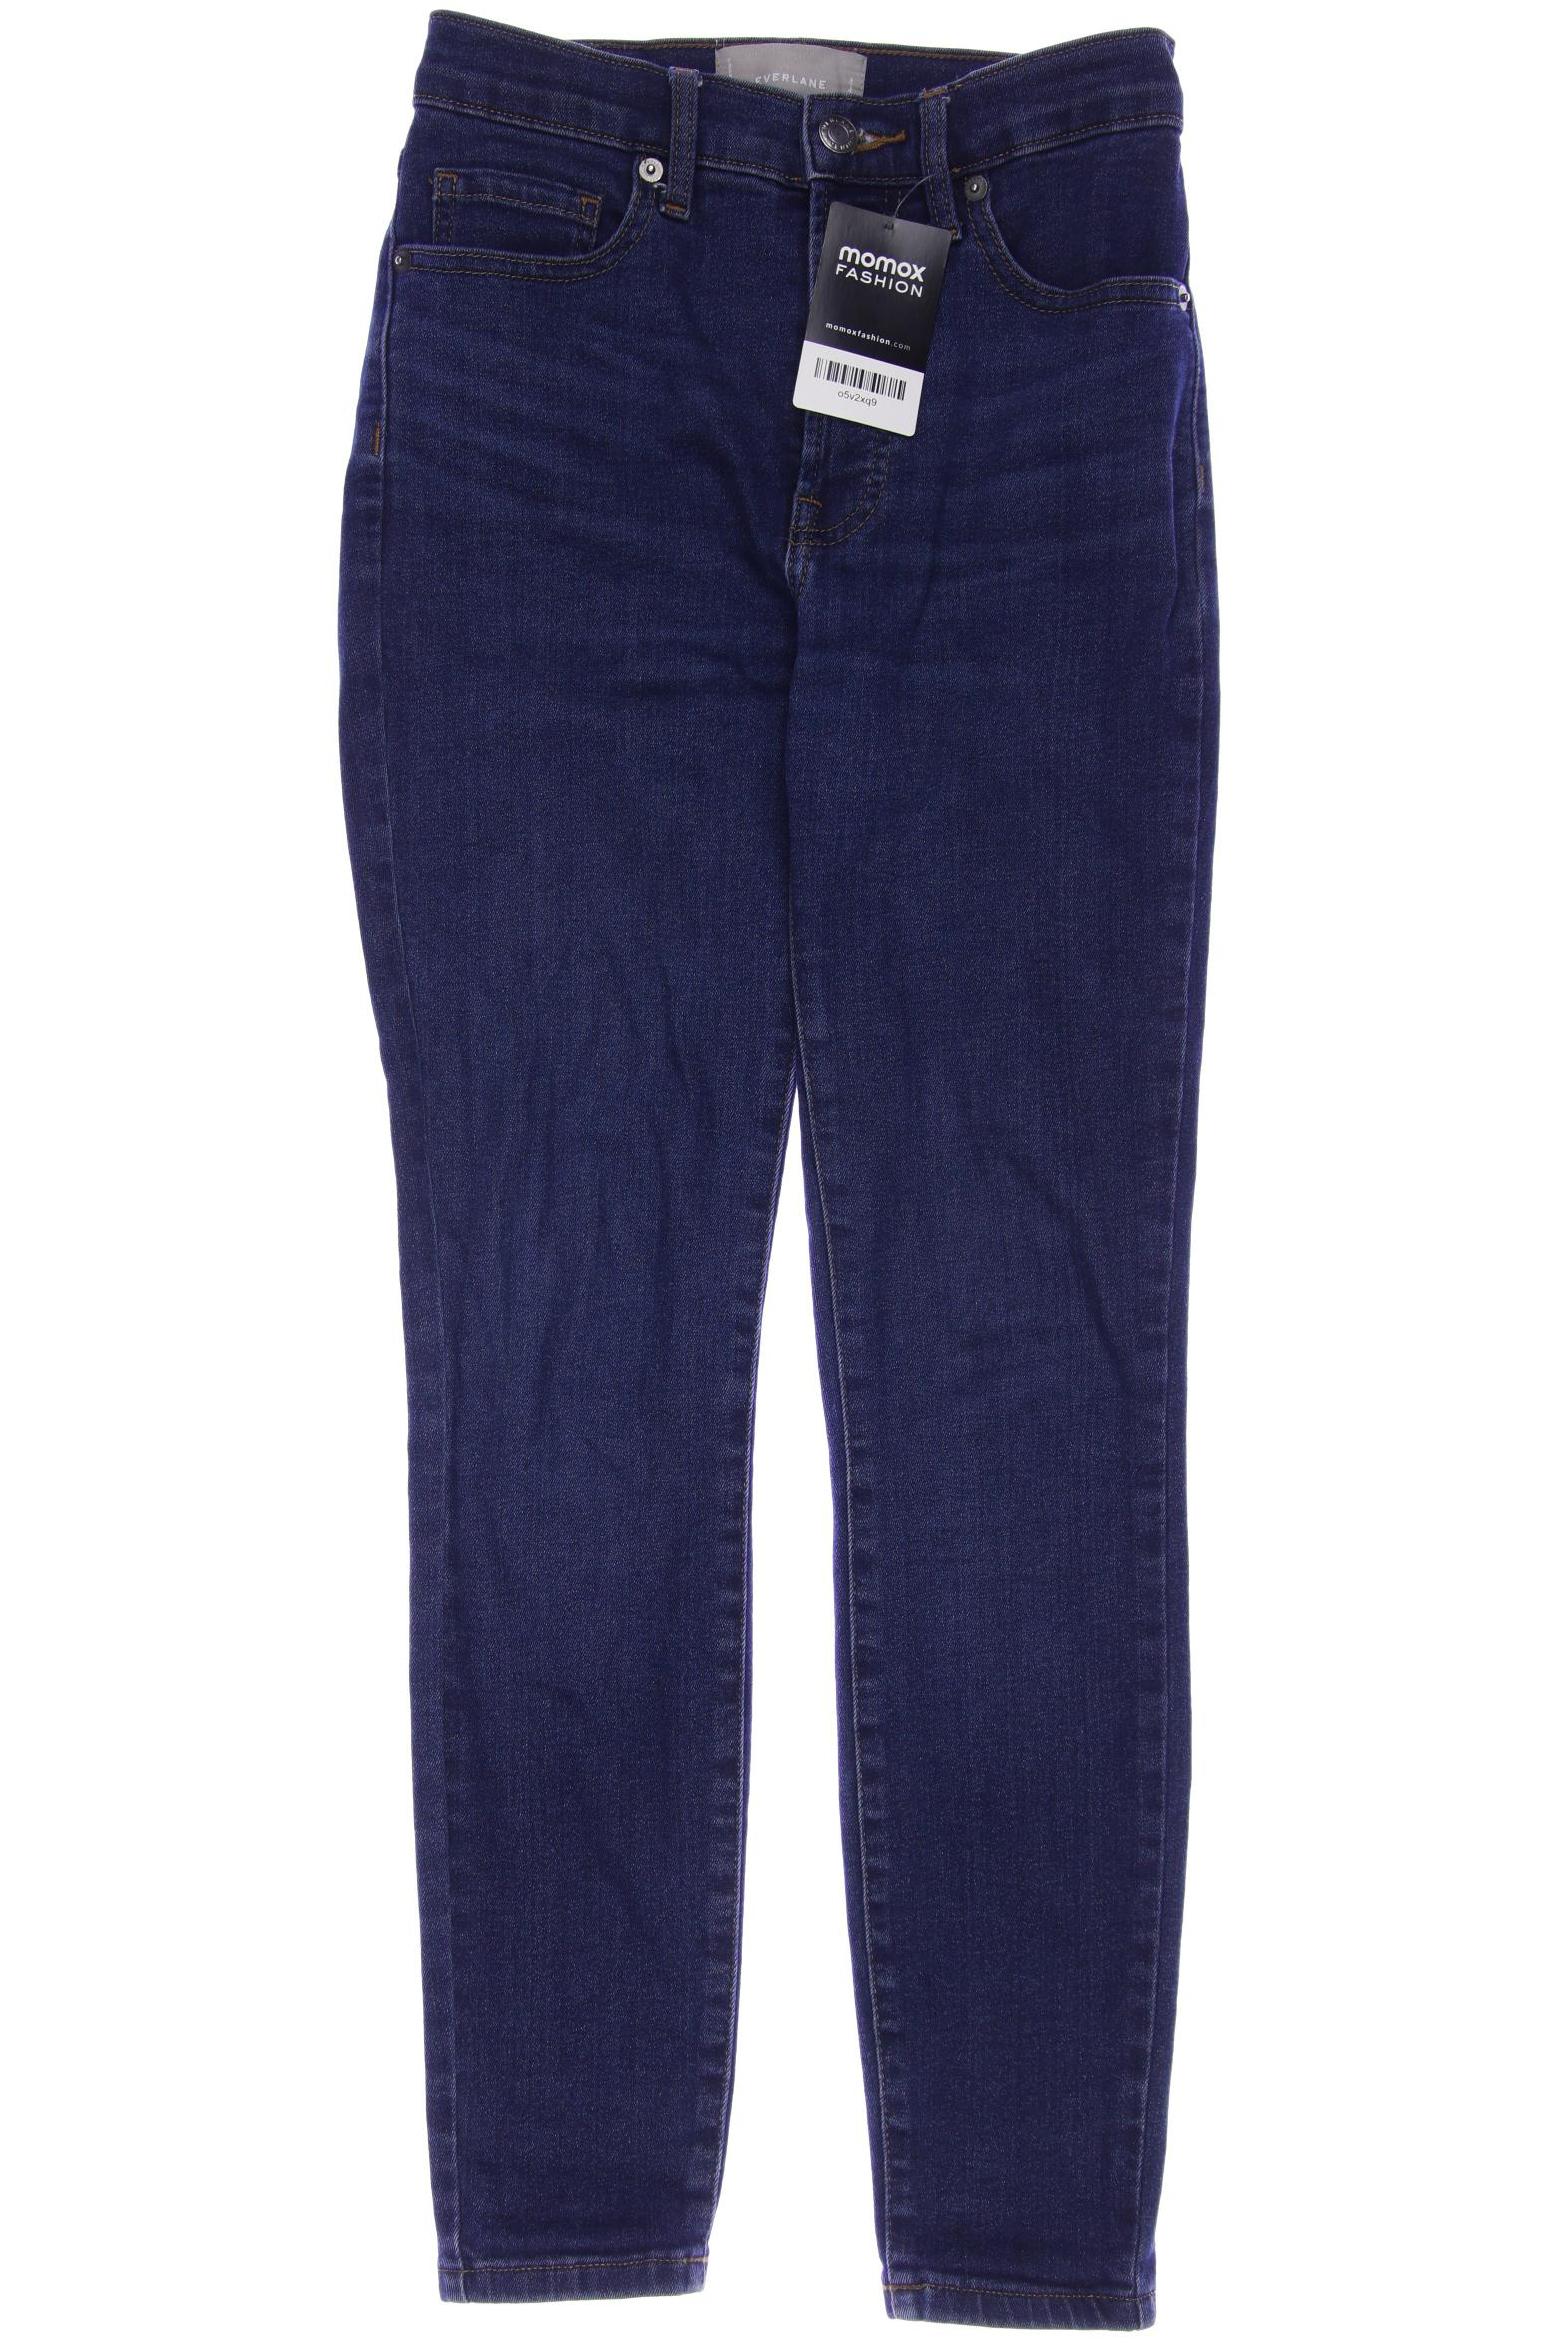 Everlane Damen Jeans, marineblau, Gr. 30 von Everlane